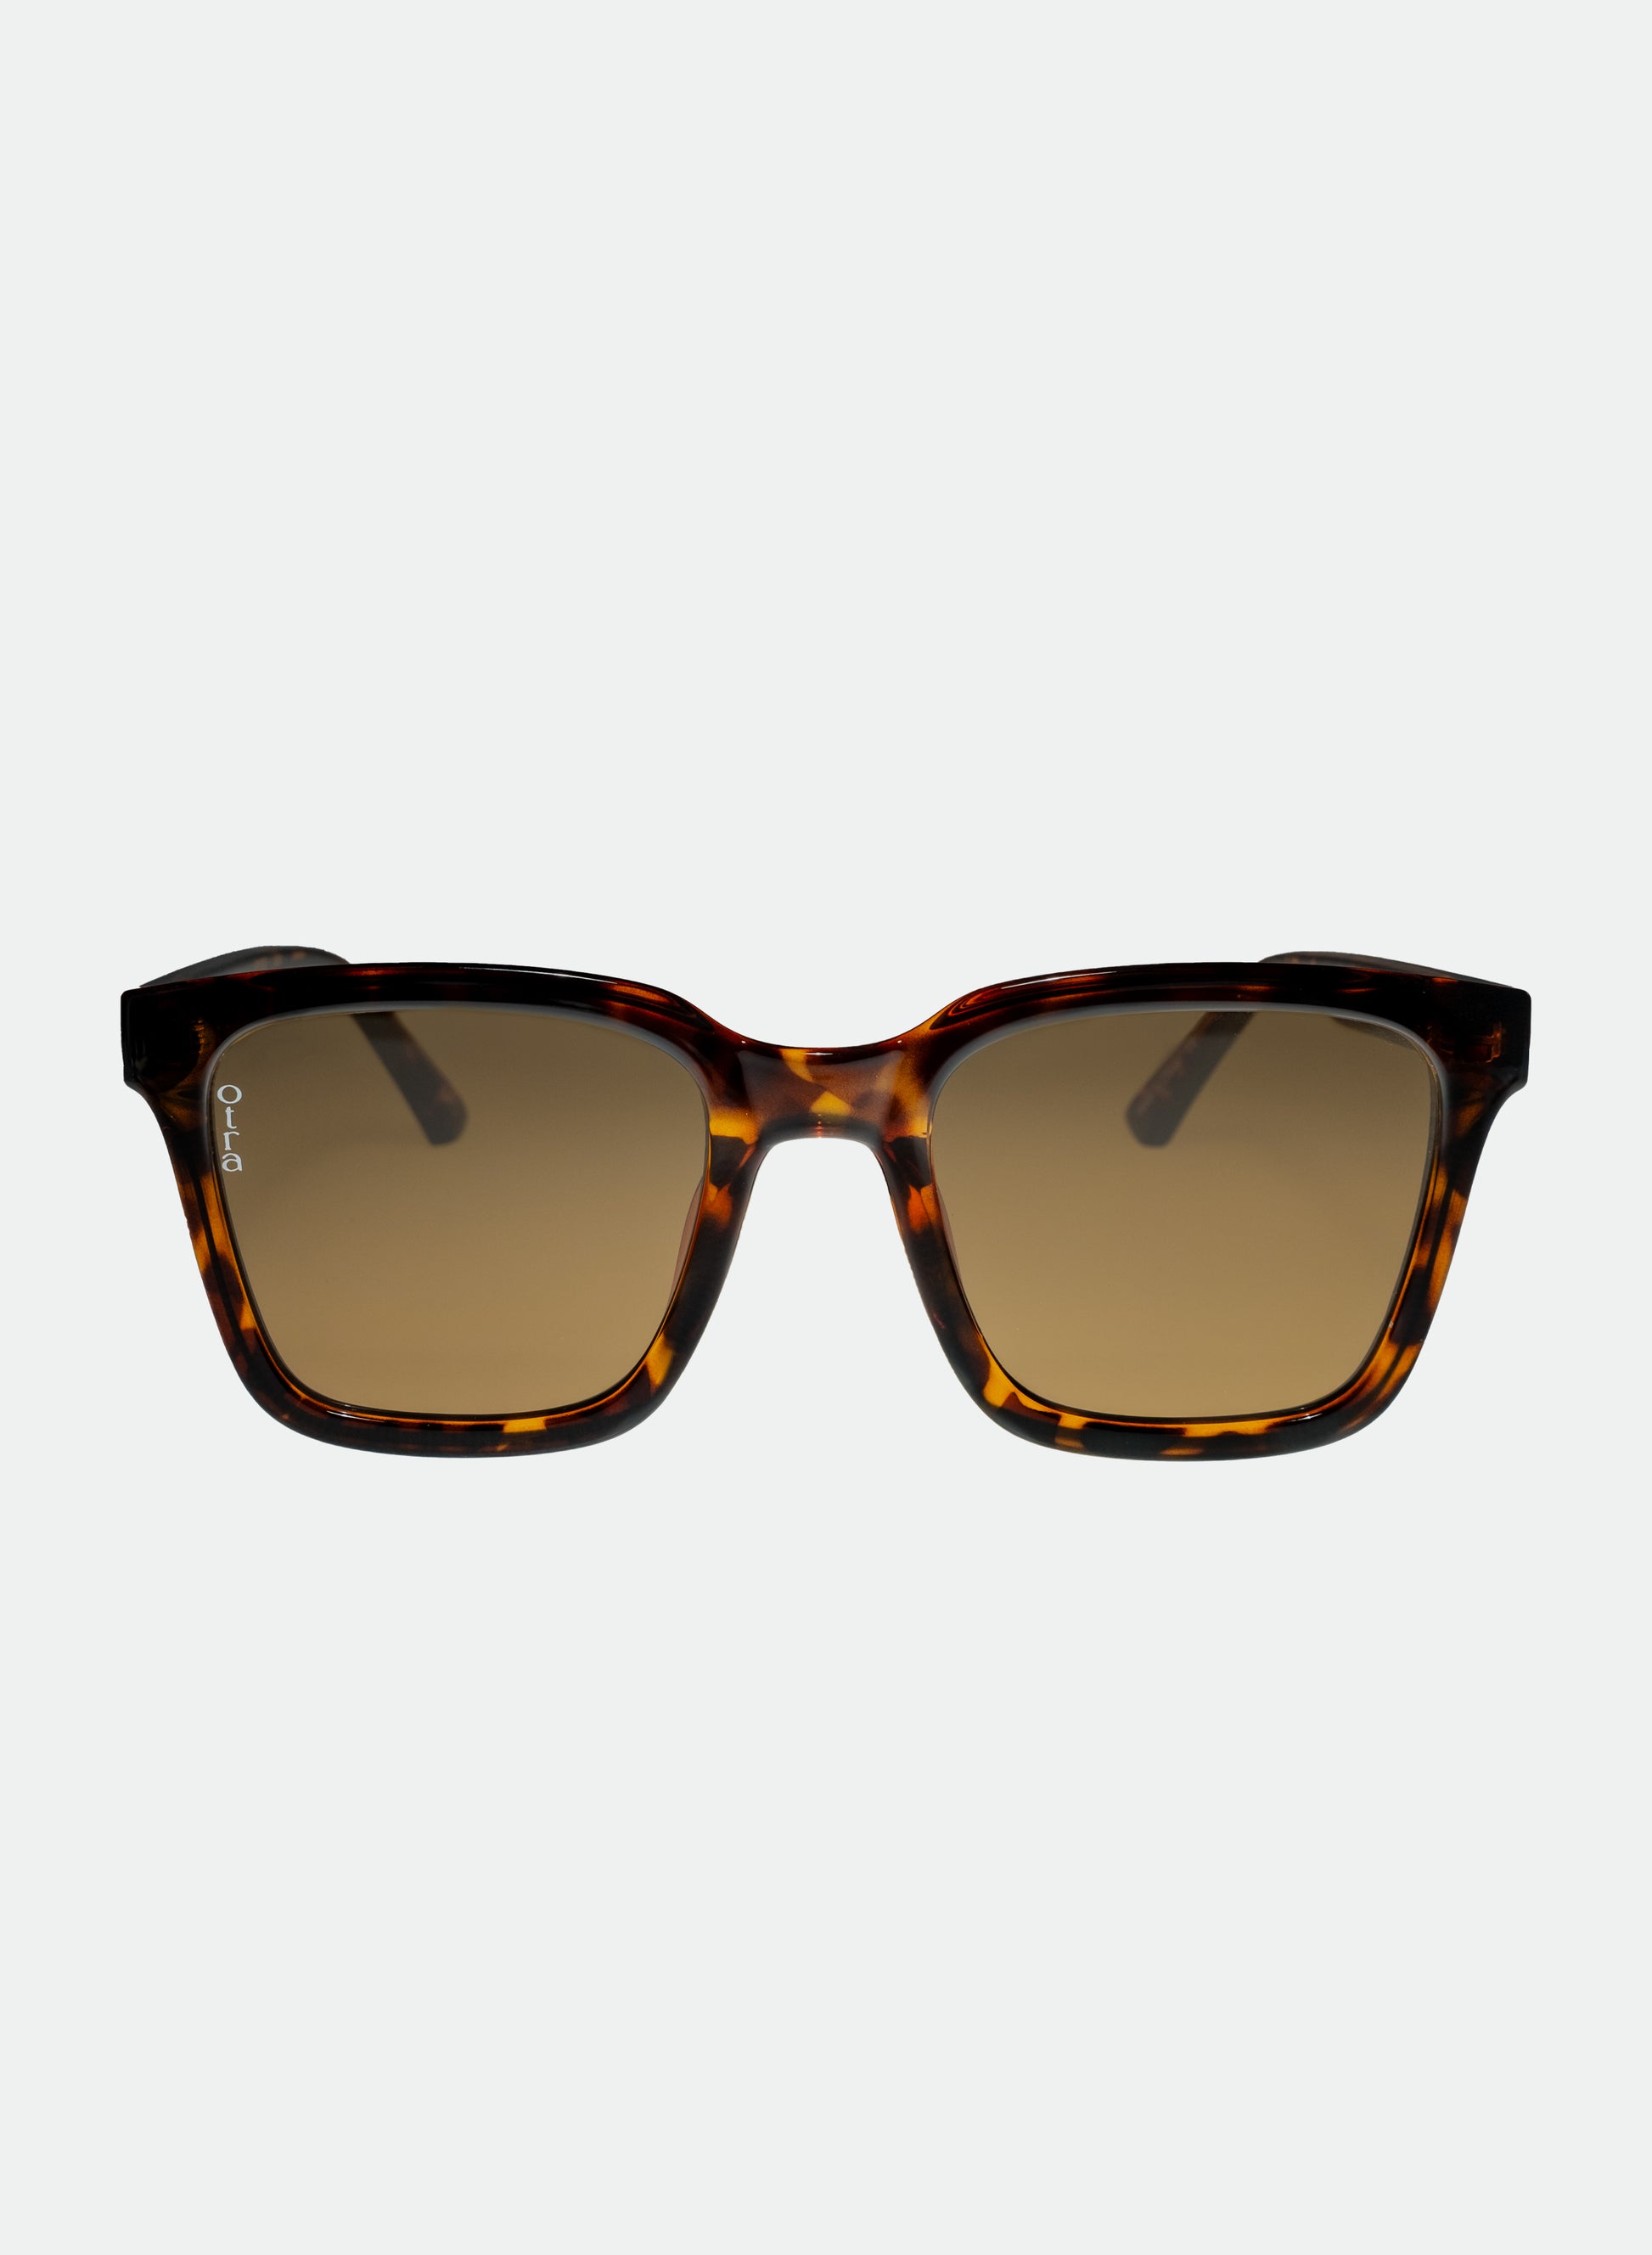 Fyn sunglasses in brown tortoiseshell